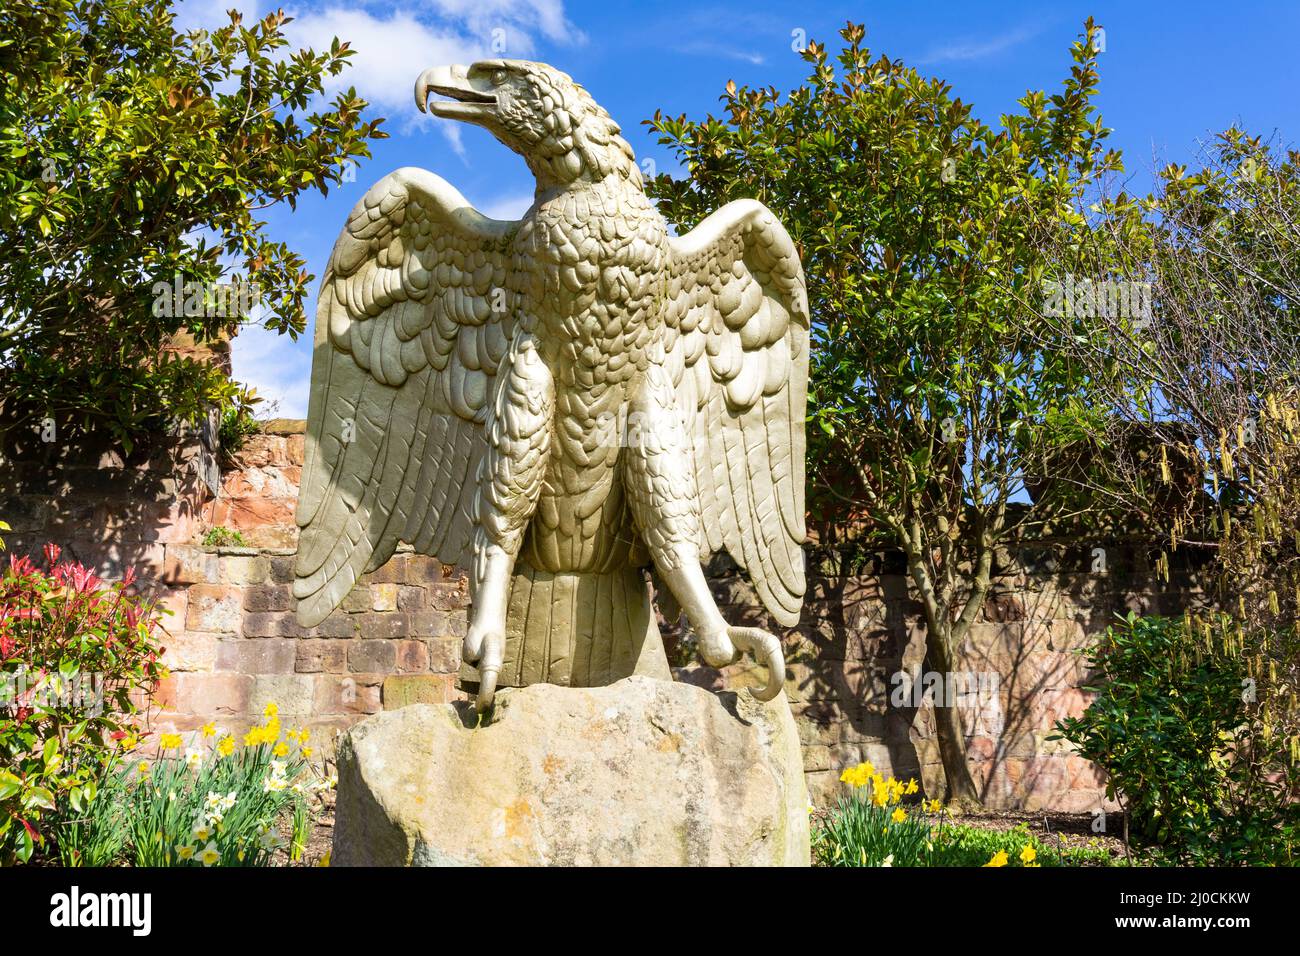 Una estatua de águila alemana dorada tomada de los cuarteles de Minden en Alemania ahora en los jardines del castillo de Shrewsbury Shrewsbury Shropshire Inglaterra Reino Unido GB Europa Foto de stock